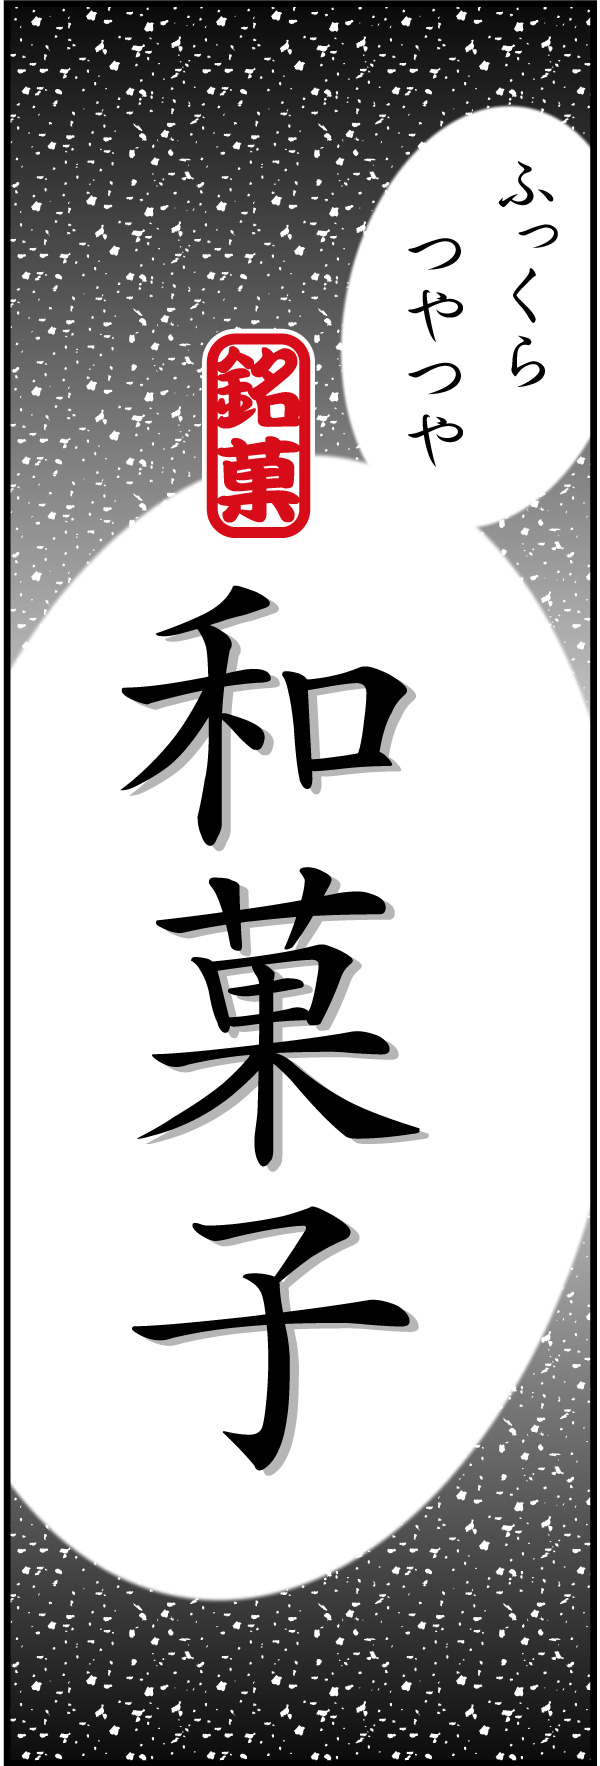 和菓子 14 「和菓子」ののぼりです。シンプルで目立つ、品のあるデザインにしました。(Y.M)